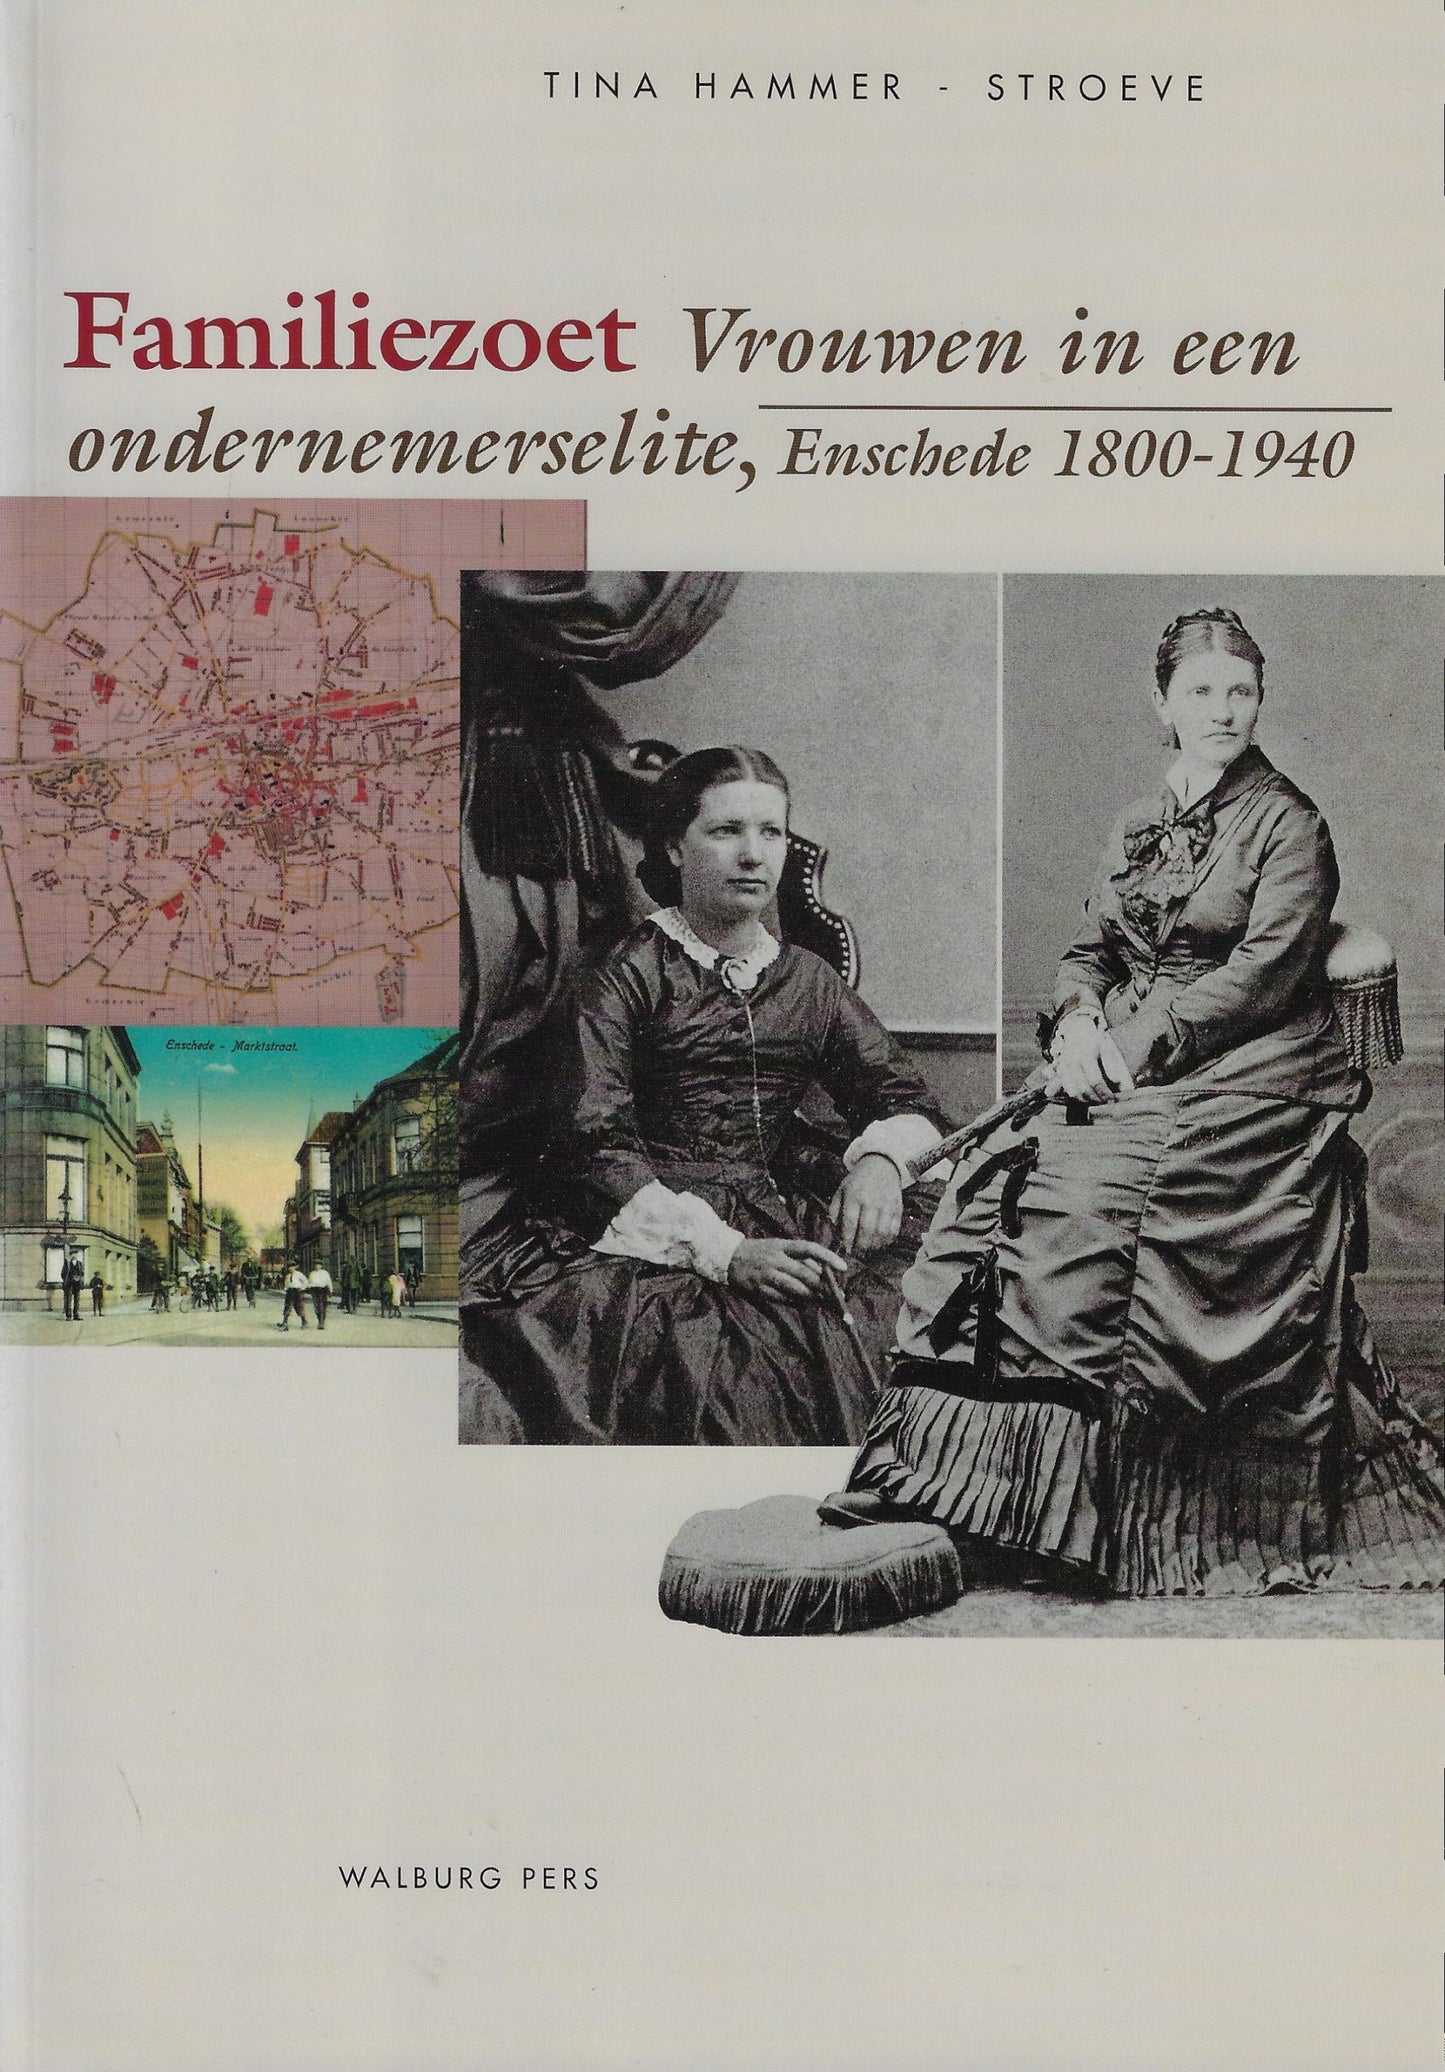 Familiezoet / vrouwen in een ondernemerselite, Enschede 1800-1940